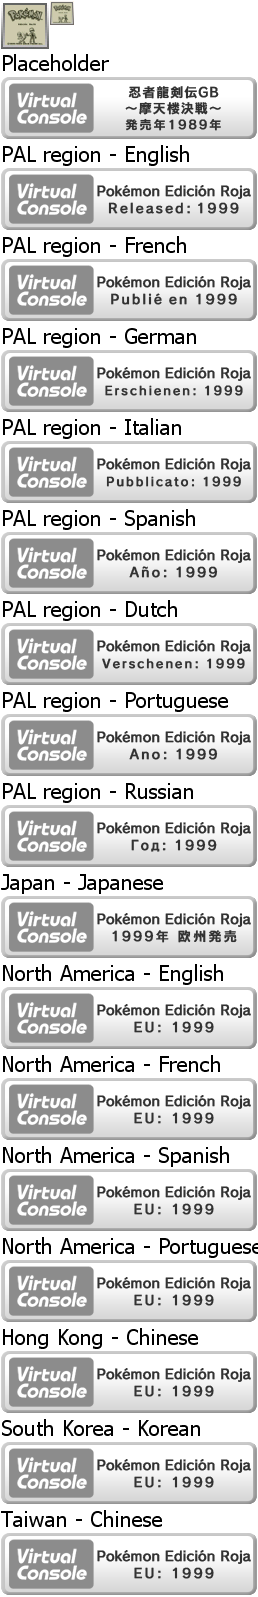 Virtual Console - Pokémon Edición Roja